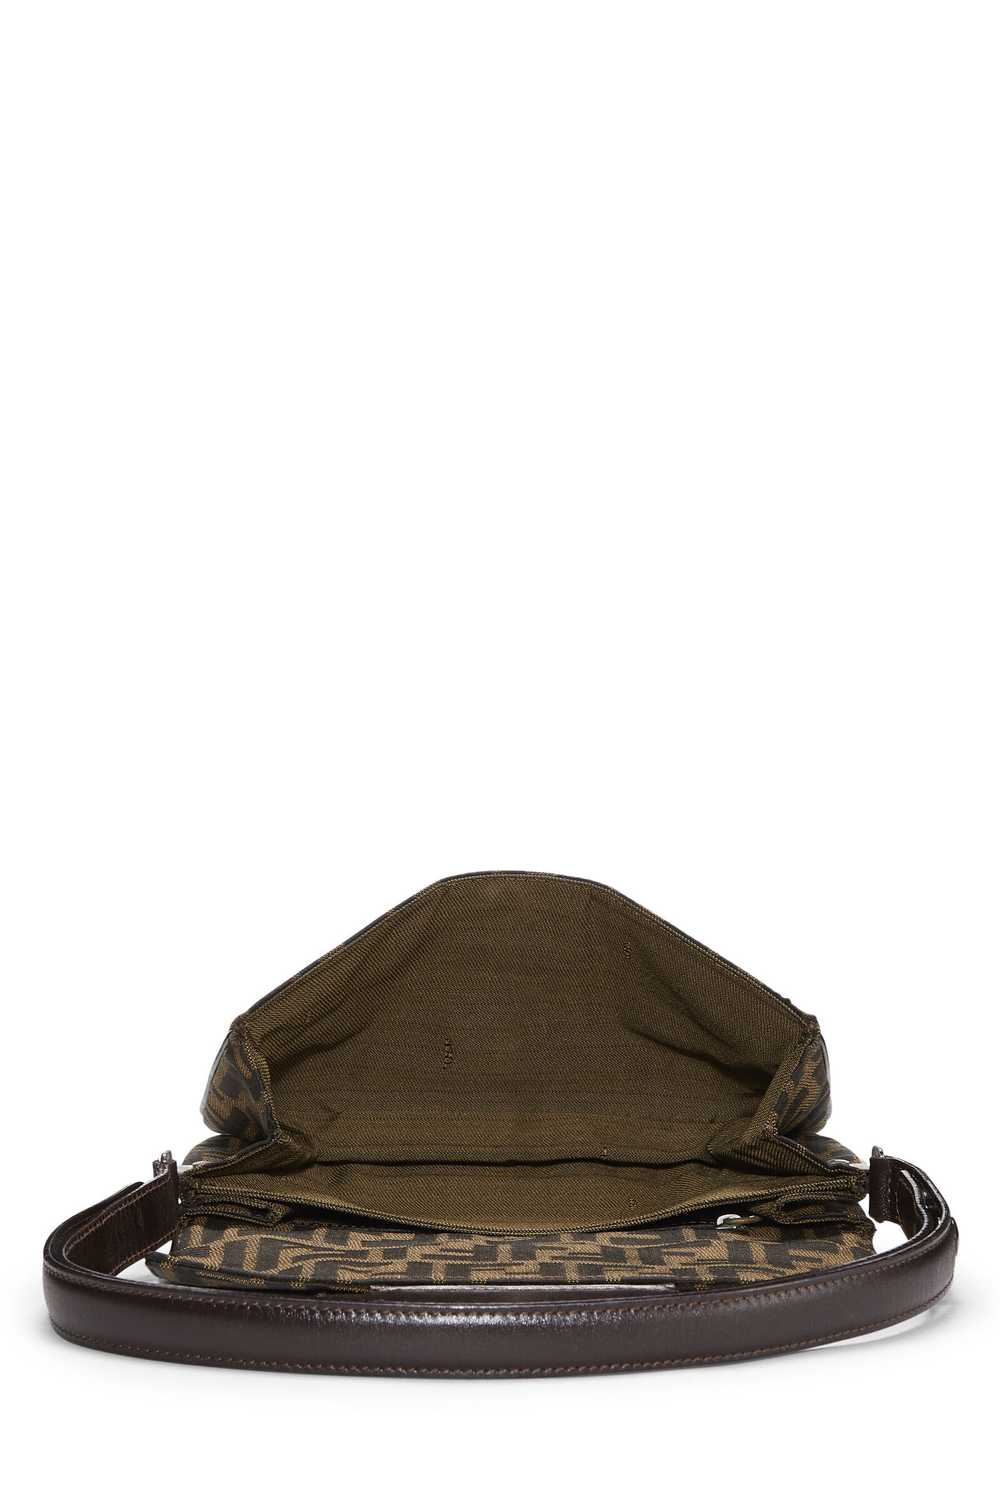 Brown Zucca Canvas Shoulder Bag - image 6